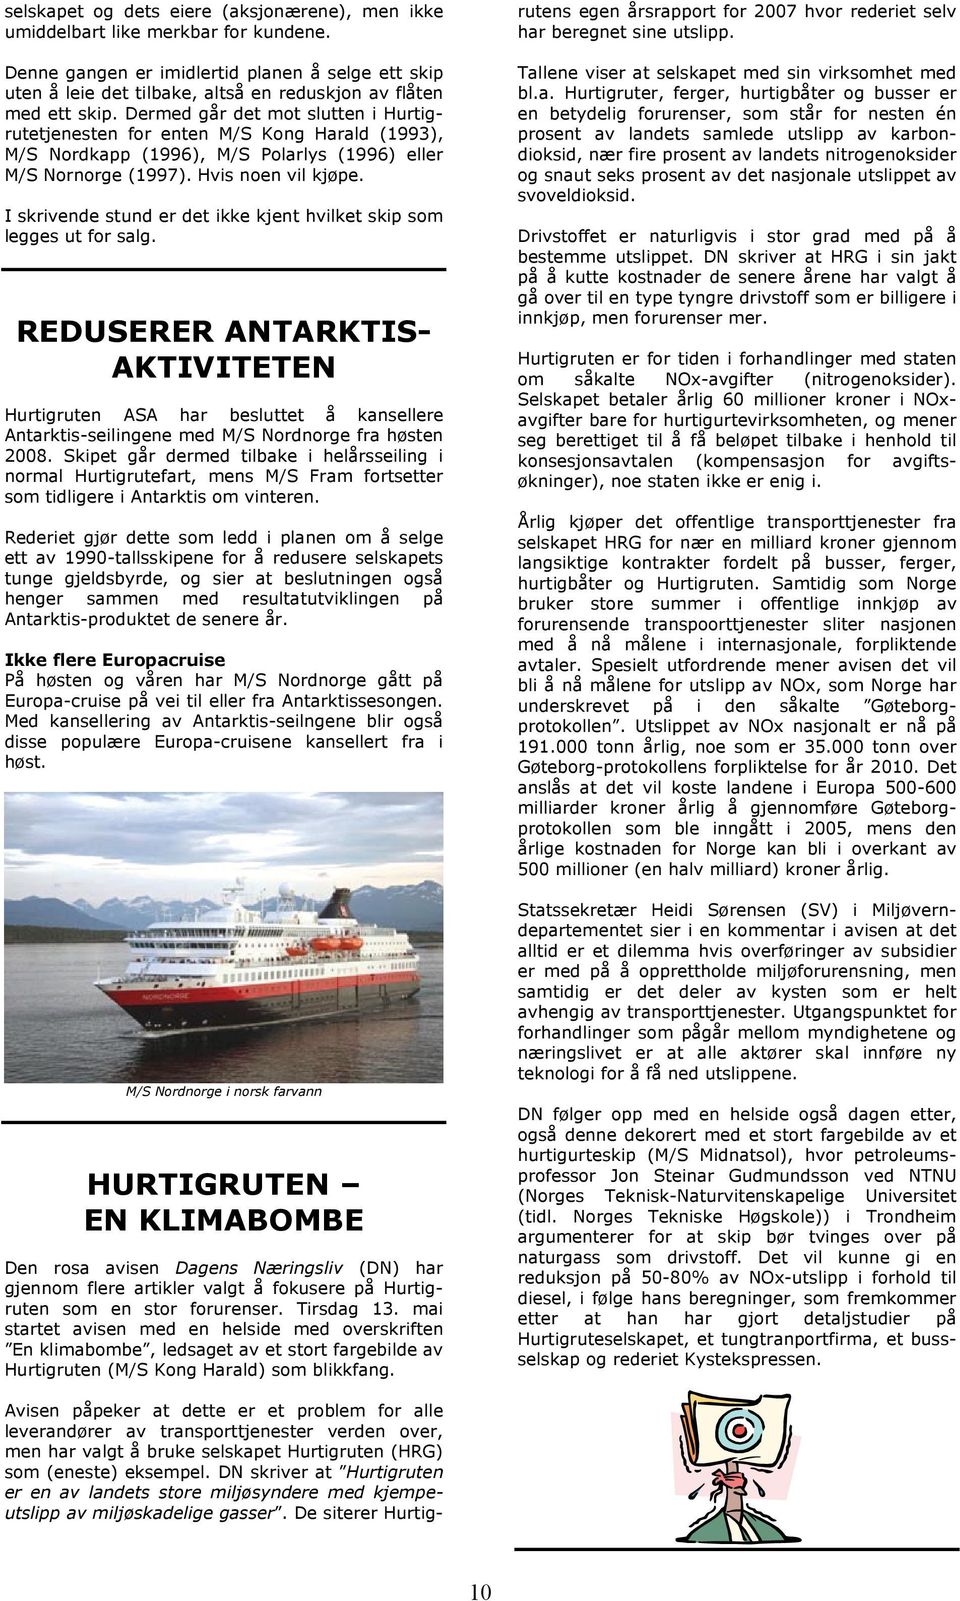 Dermed går det mot slutten i Hurtigrutetjenesten for enten M/S Kong Harald (1993), M/S Nordkapp (1996), M/S Polarlys (1996) eller M/S Nornorge (1997). Hvis noen vil kjøpe.